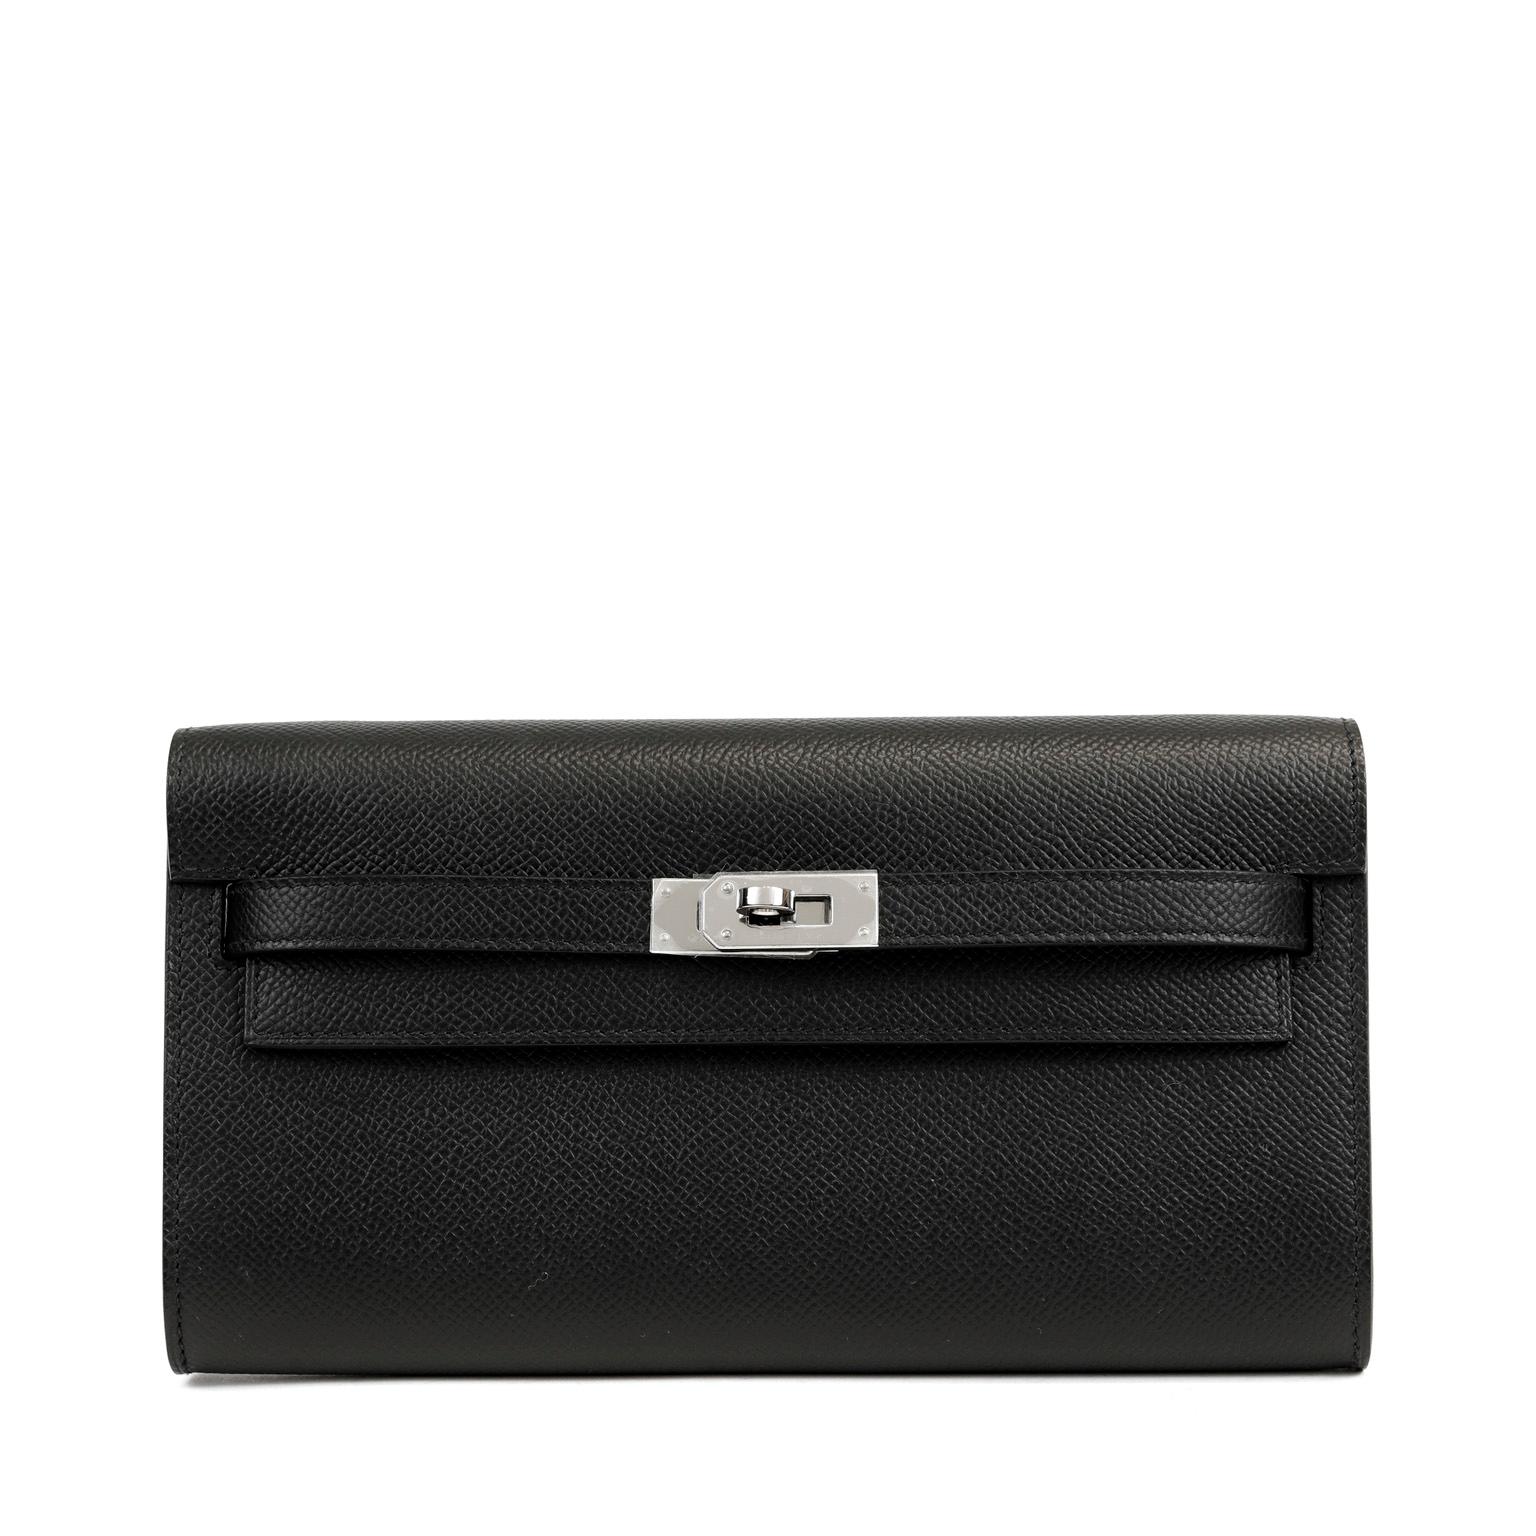 Cet authentique portefeuille Hermès Kelly To Go noir est en parfait état et n'a pas été porté. Le plastique de protection est intact sur le matériel en Palladium.  Élégant, stylé et polyvalent, le portefeuille To Go est à la fois un sac transversal